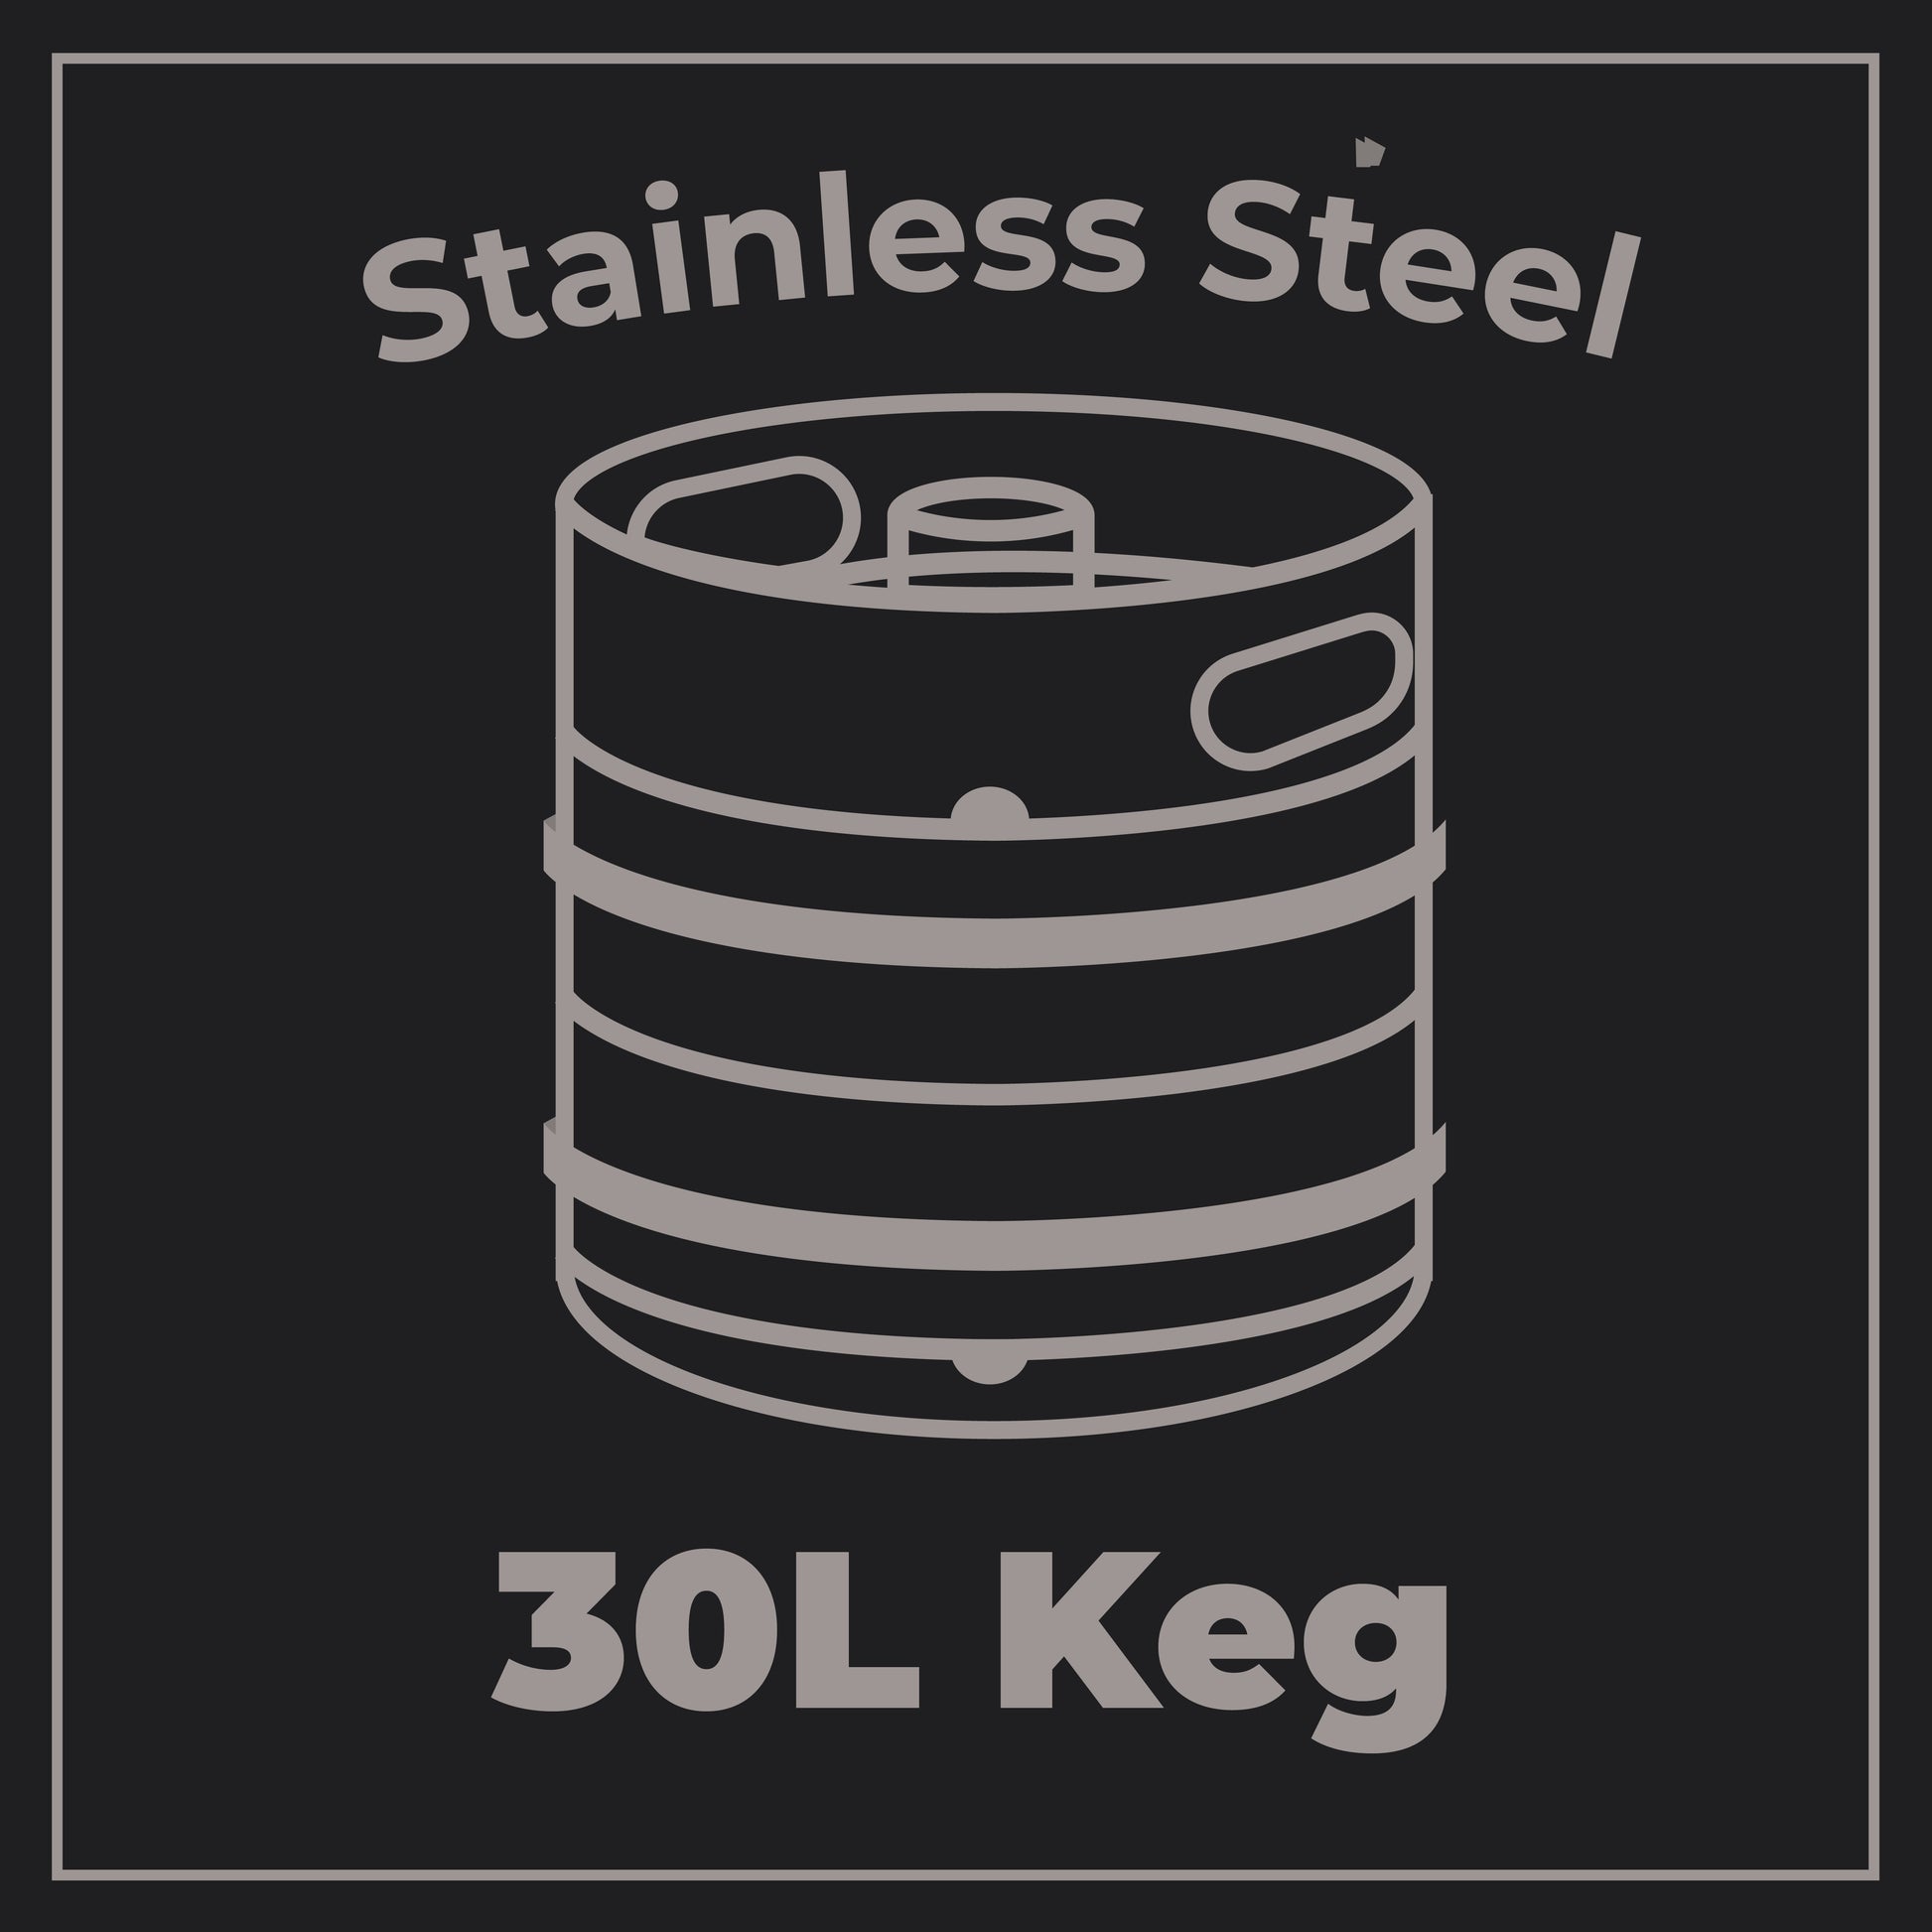 Rye River - Irish Lager - Bidin'Time - 4.5% ABV - 30L Keg (53 Pints) - Stainless Steel Keg